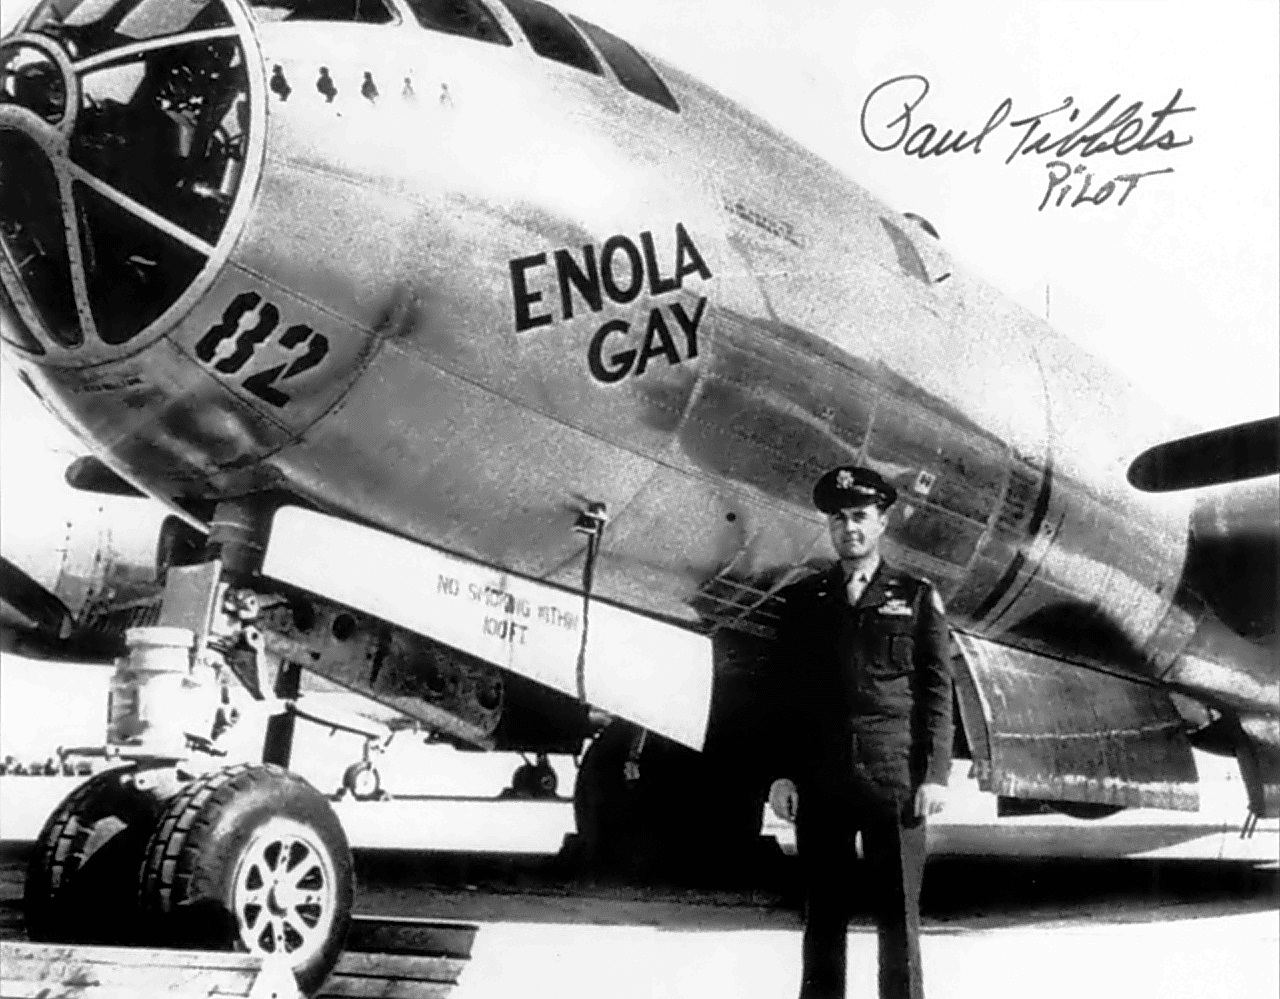 the original enola gay exhibit title